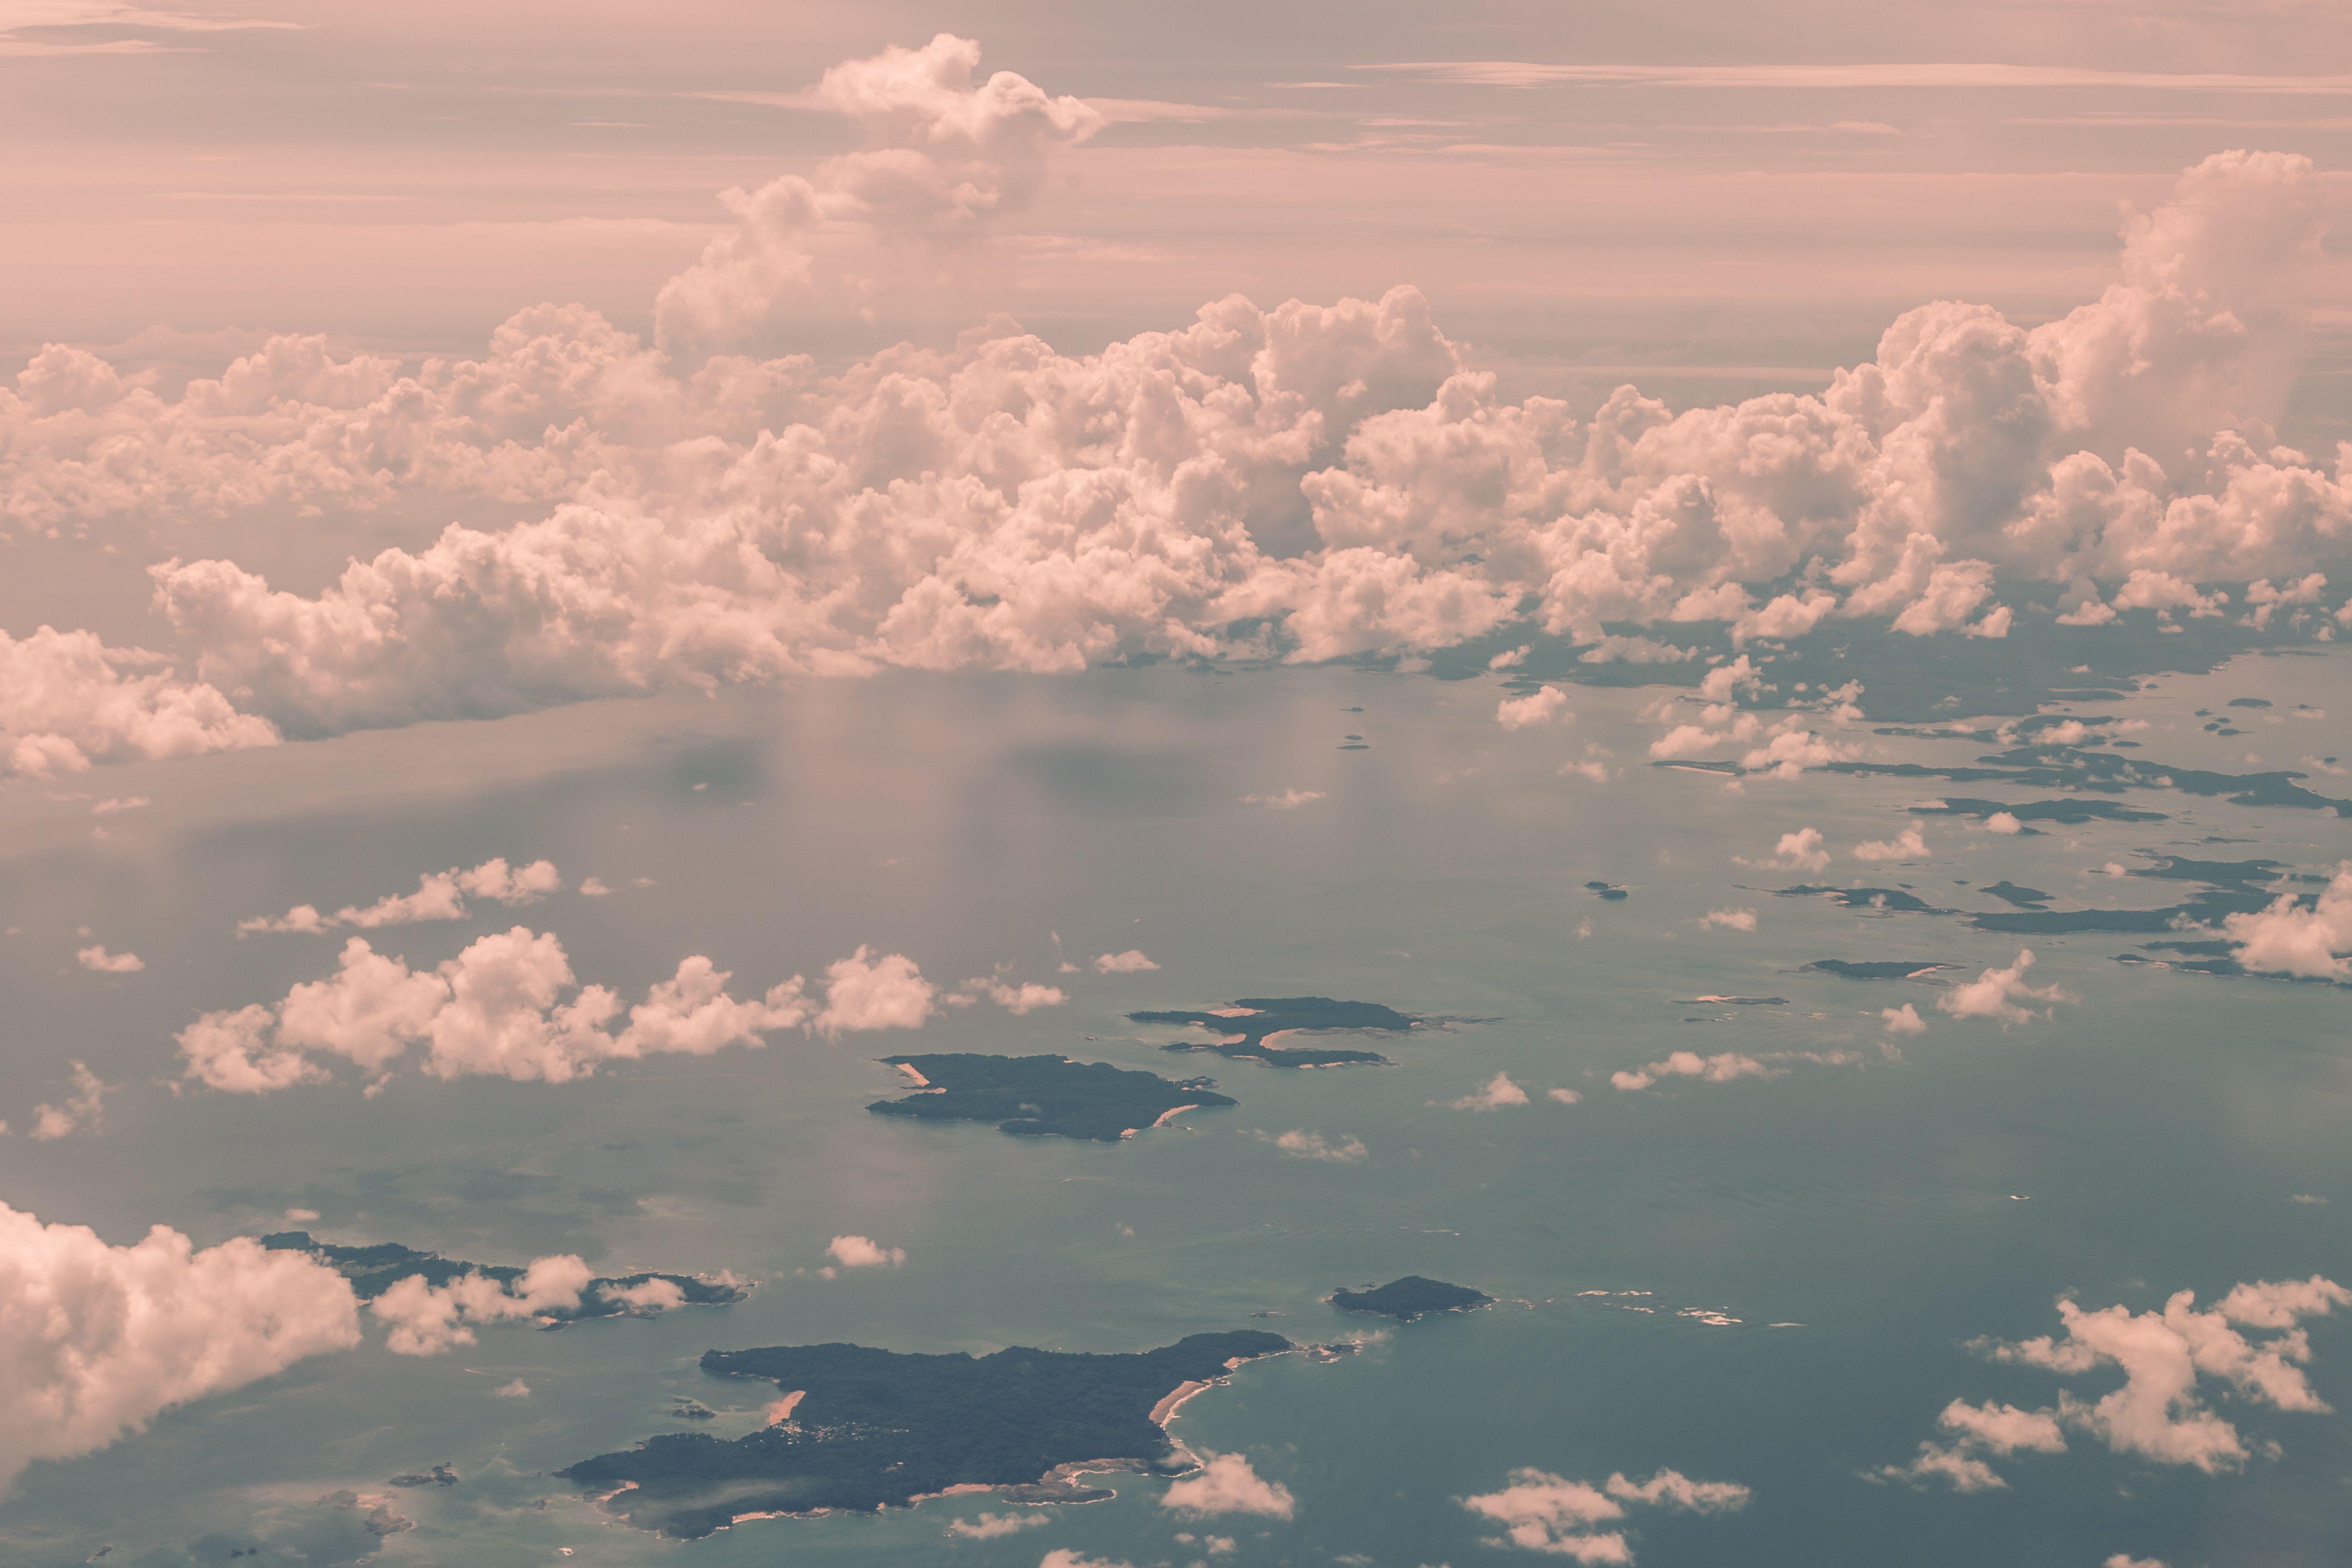 5126x3417 5126x3417 # nước, # fluffy, #islands, #sea, #sky, #island, # mơ mộng, # đám mây, #land, #aerial, #PNG image, #ocean, #pink HD Desktop Wallpaper